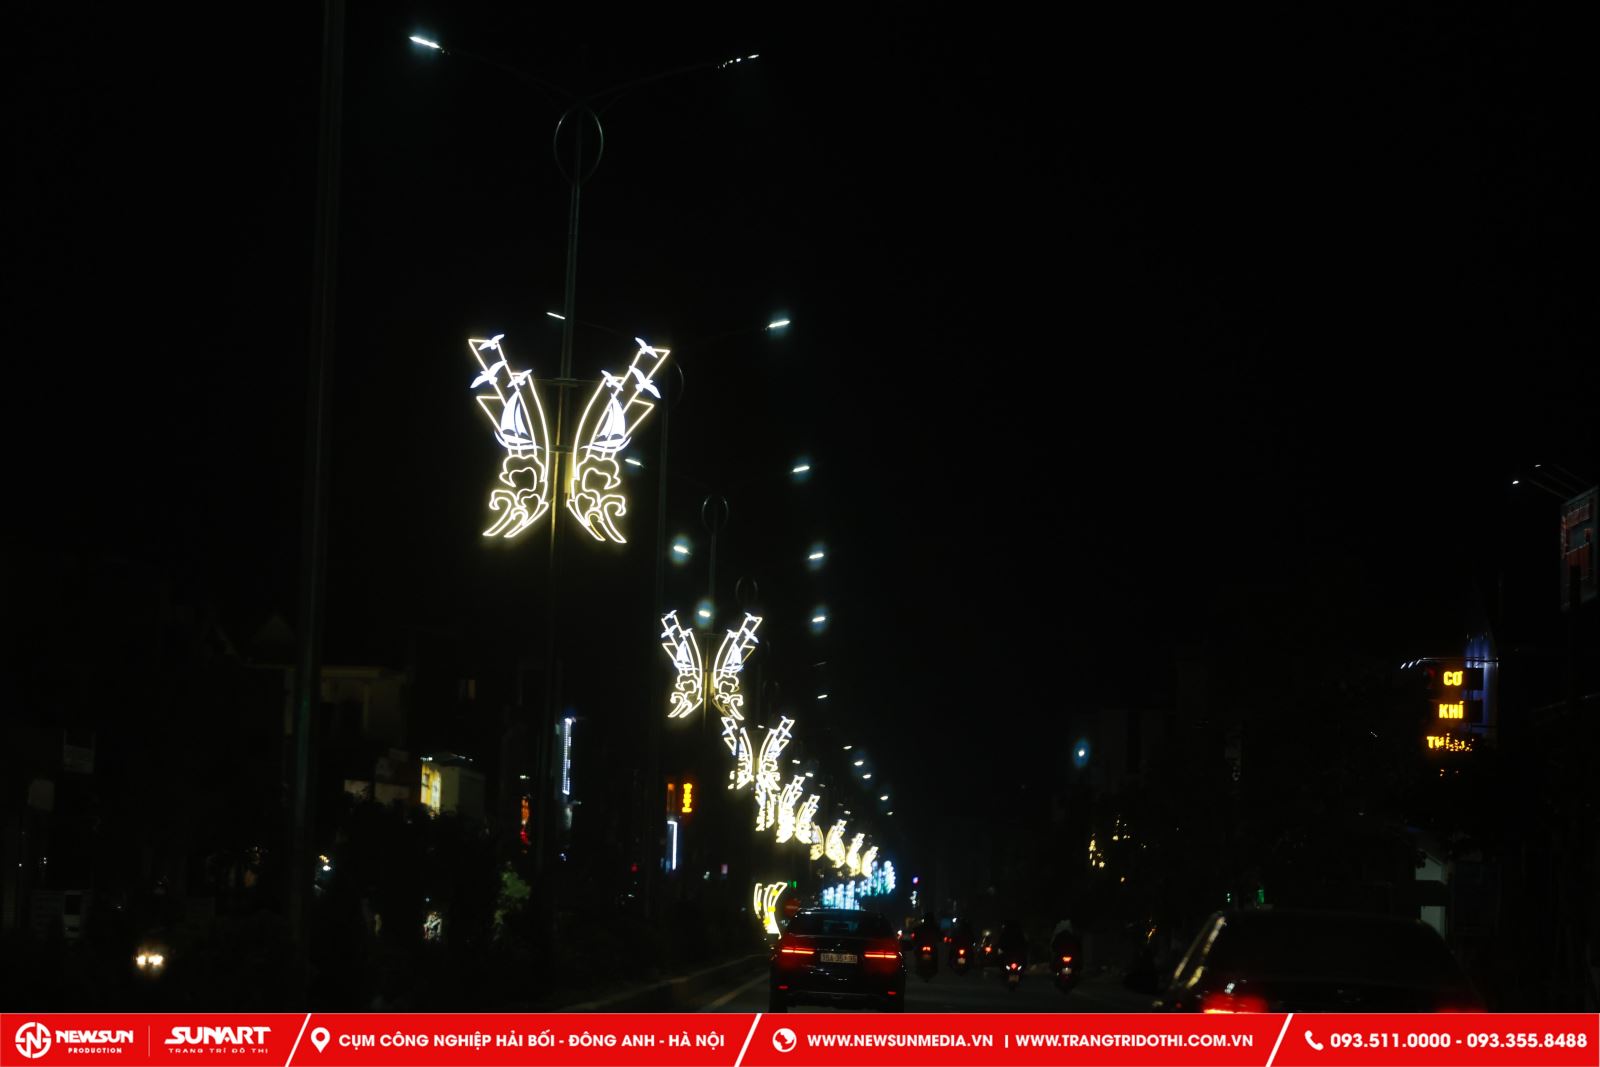 Trang trí đèn đường là việc sử dụng các đèn, bóng đèn, đèn led, hoặc các phụ kiện khác để trang trí cho các đường phố